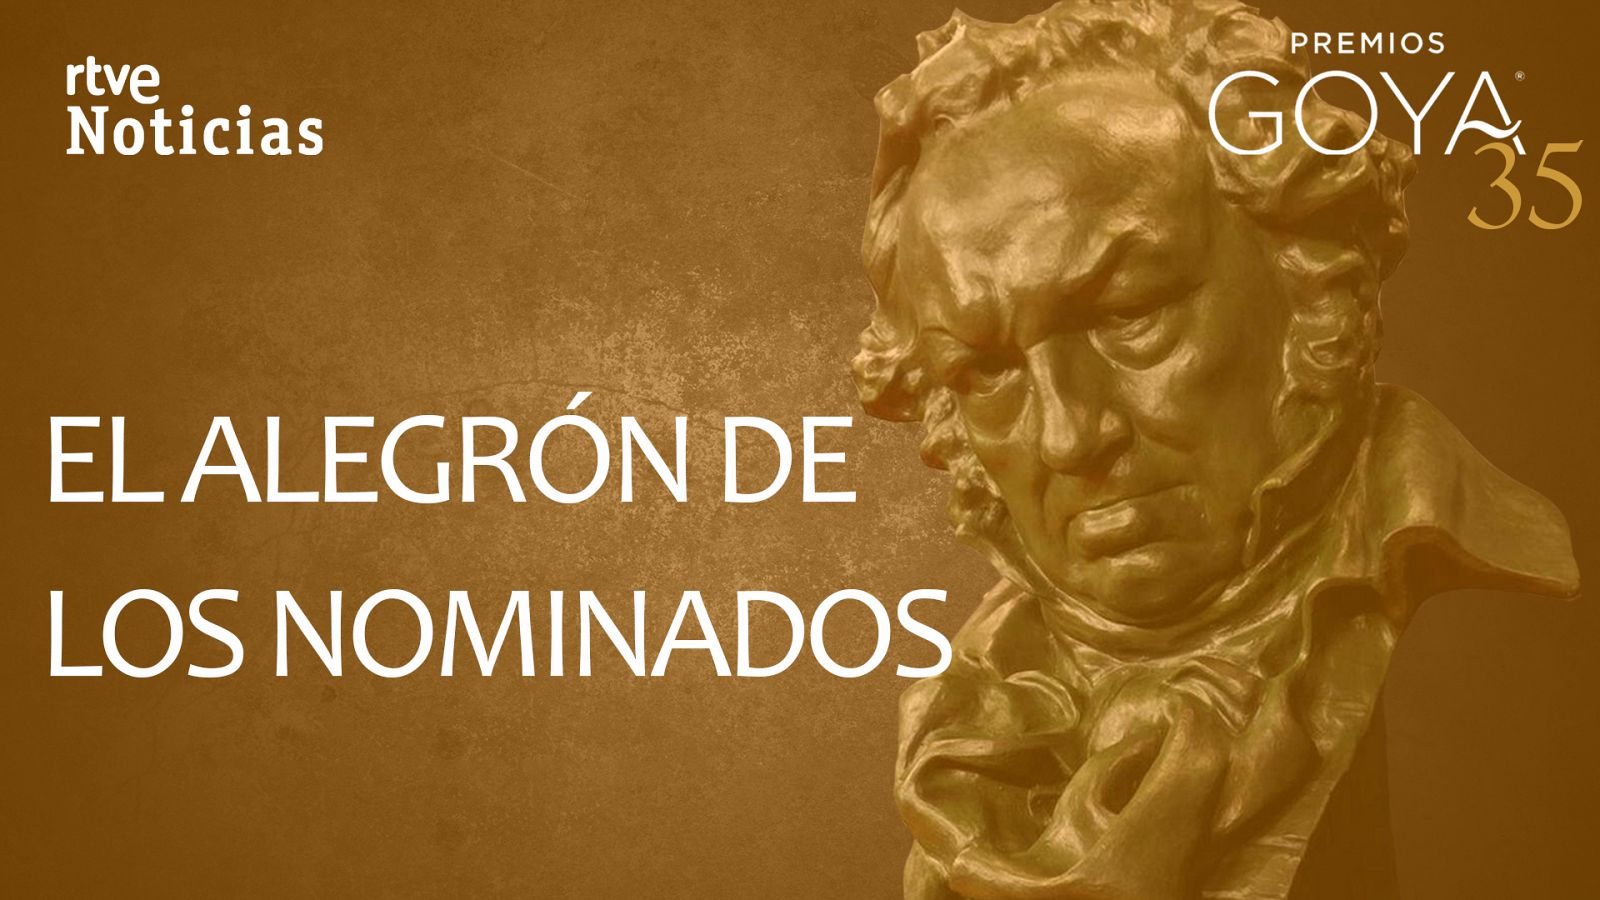 Los nominados a los Goya celebran su candidatura